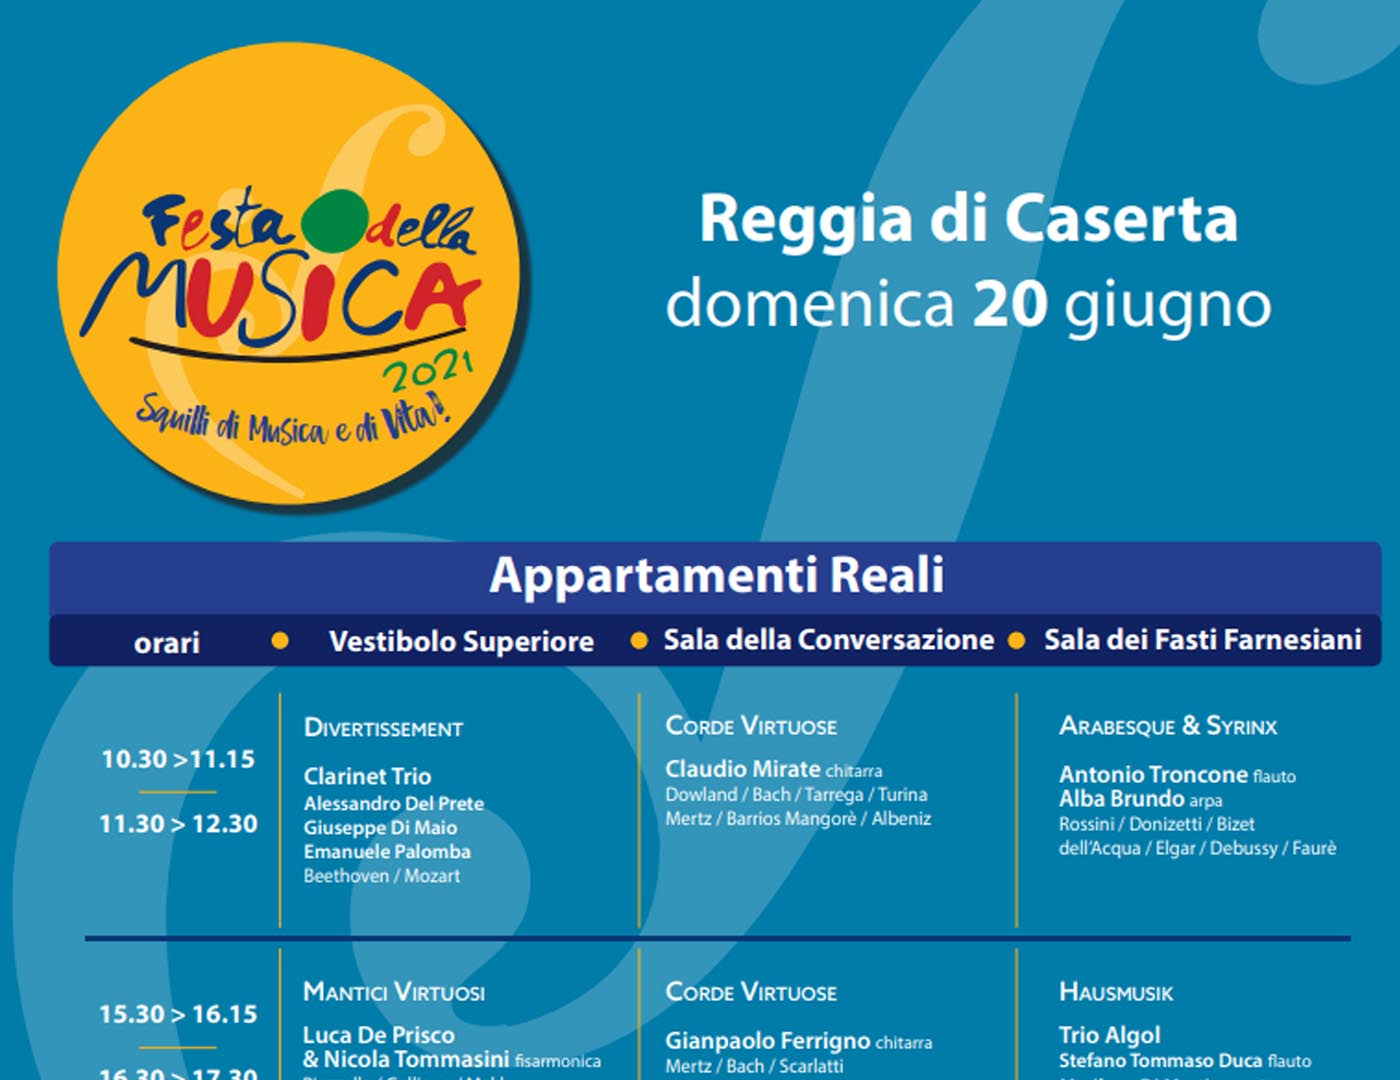 FESTA DELLA MUSICA - Domenica 20/06/2021 - Reggia di Caserta